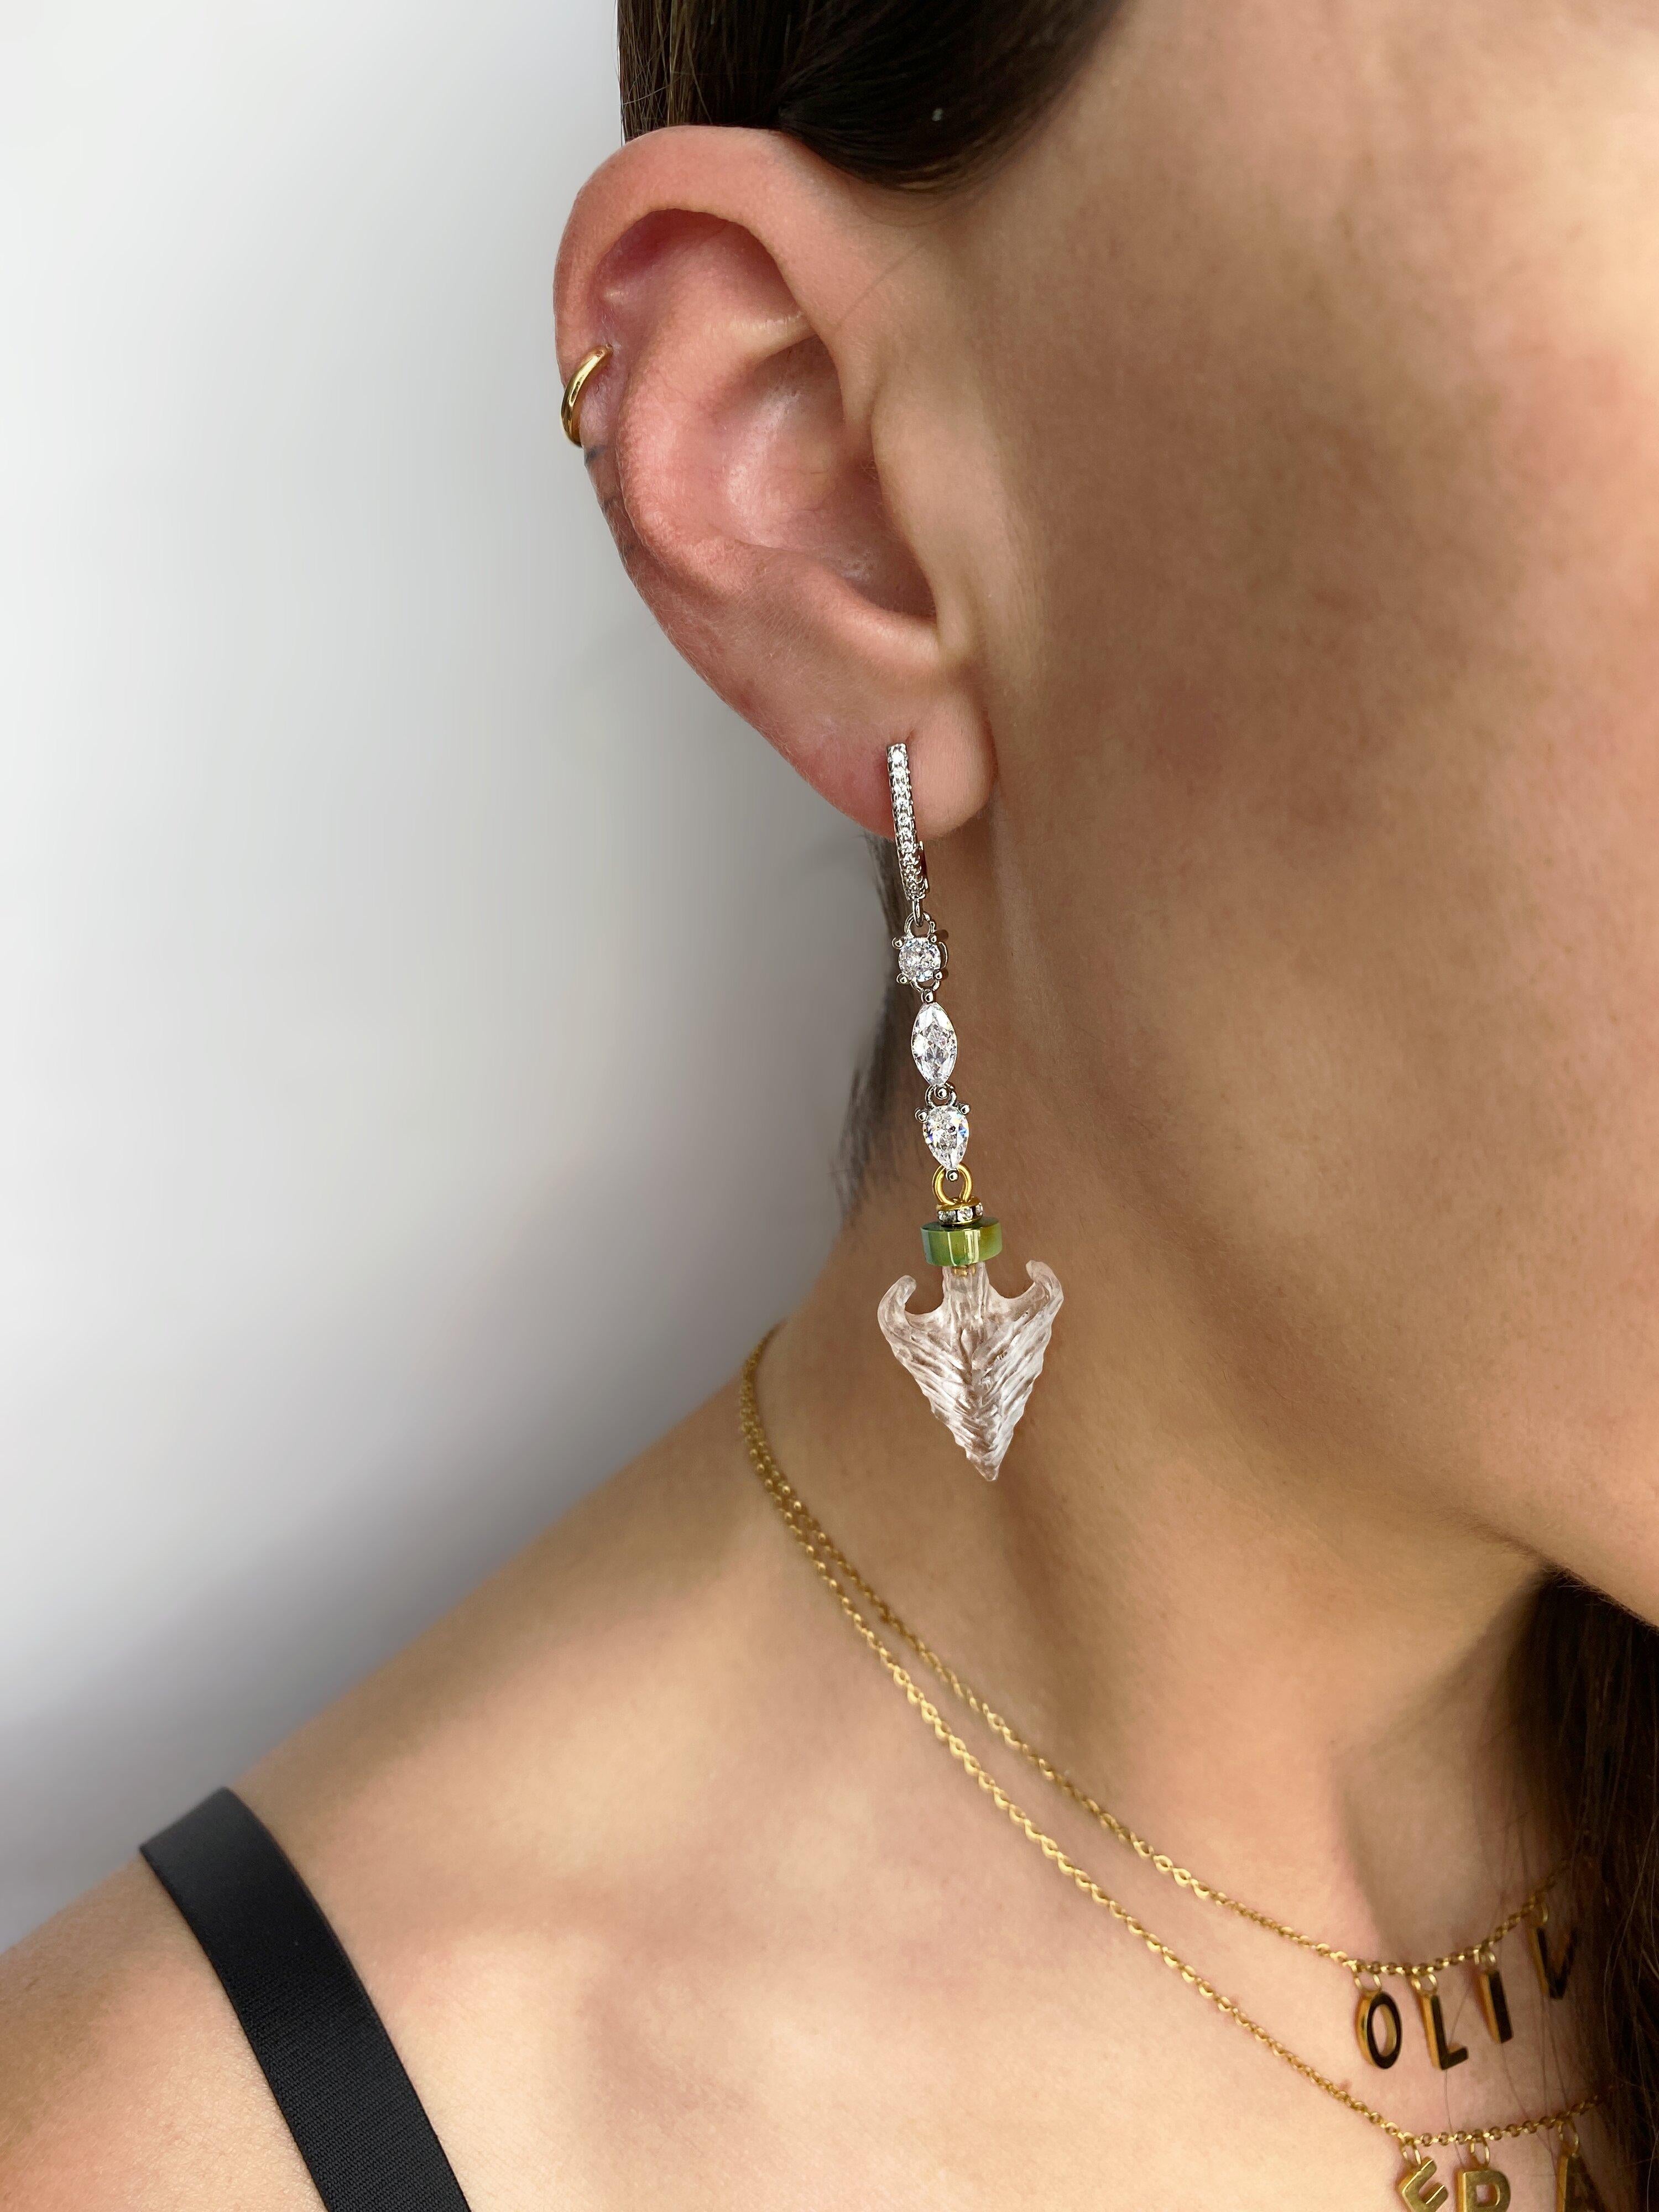 Diese einzigartigen vergoldeten Ohrringe haben eine Kette aus geschliffenem Kristall mit einem hängenden, handgeschnitzten Lucite-Anker, der mit natürlichem Türkis besetzt ist. Leichtes und elegantes Design von Sebastian Jaramillo.